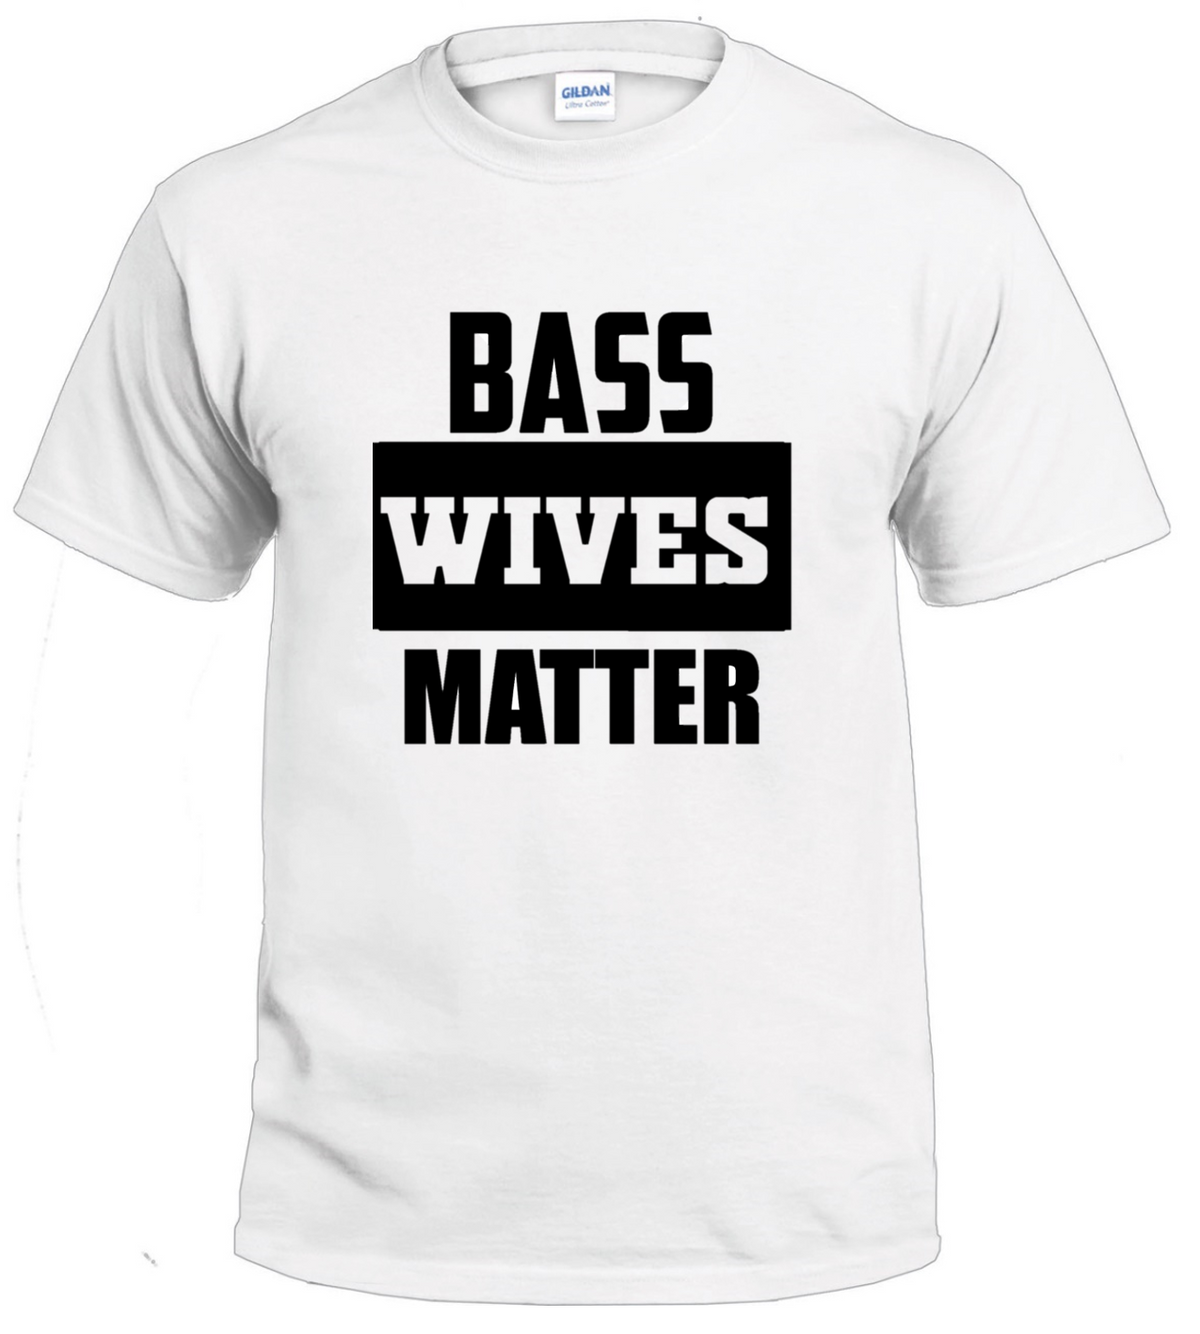 Bass Wives Matter Basshead tshirt